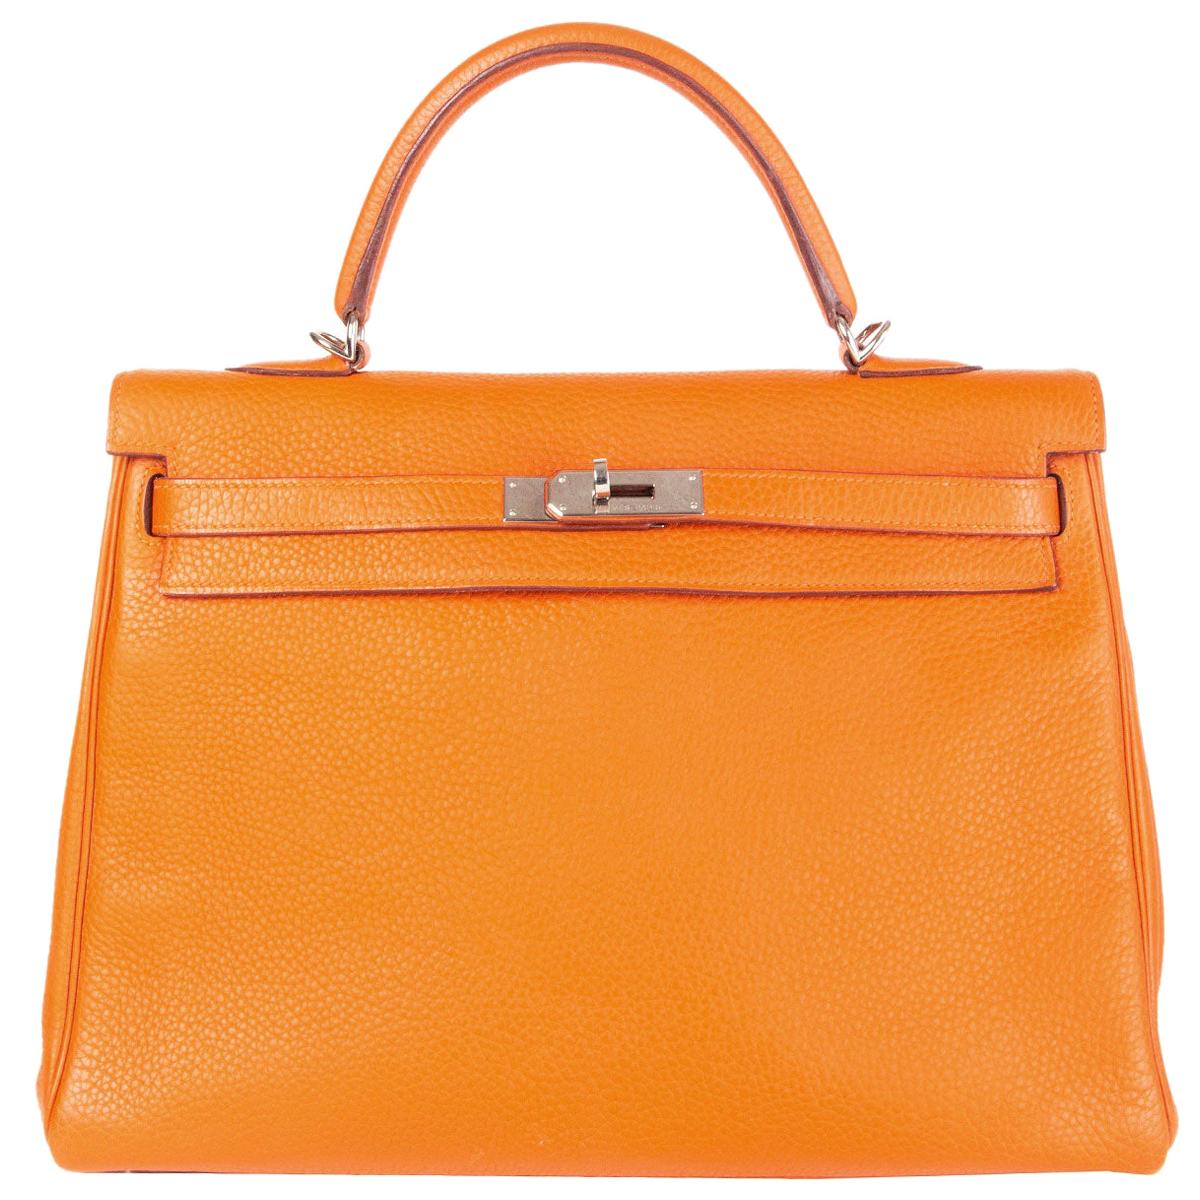 HERMES Potiron orange Clemence leather KELLY 35 RETOURNE Bag